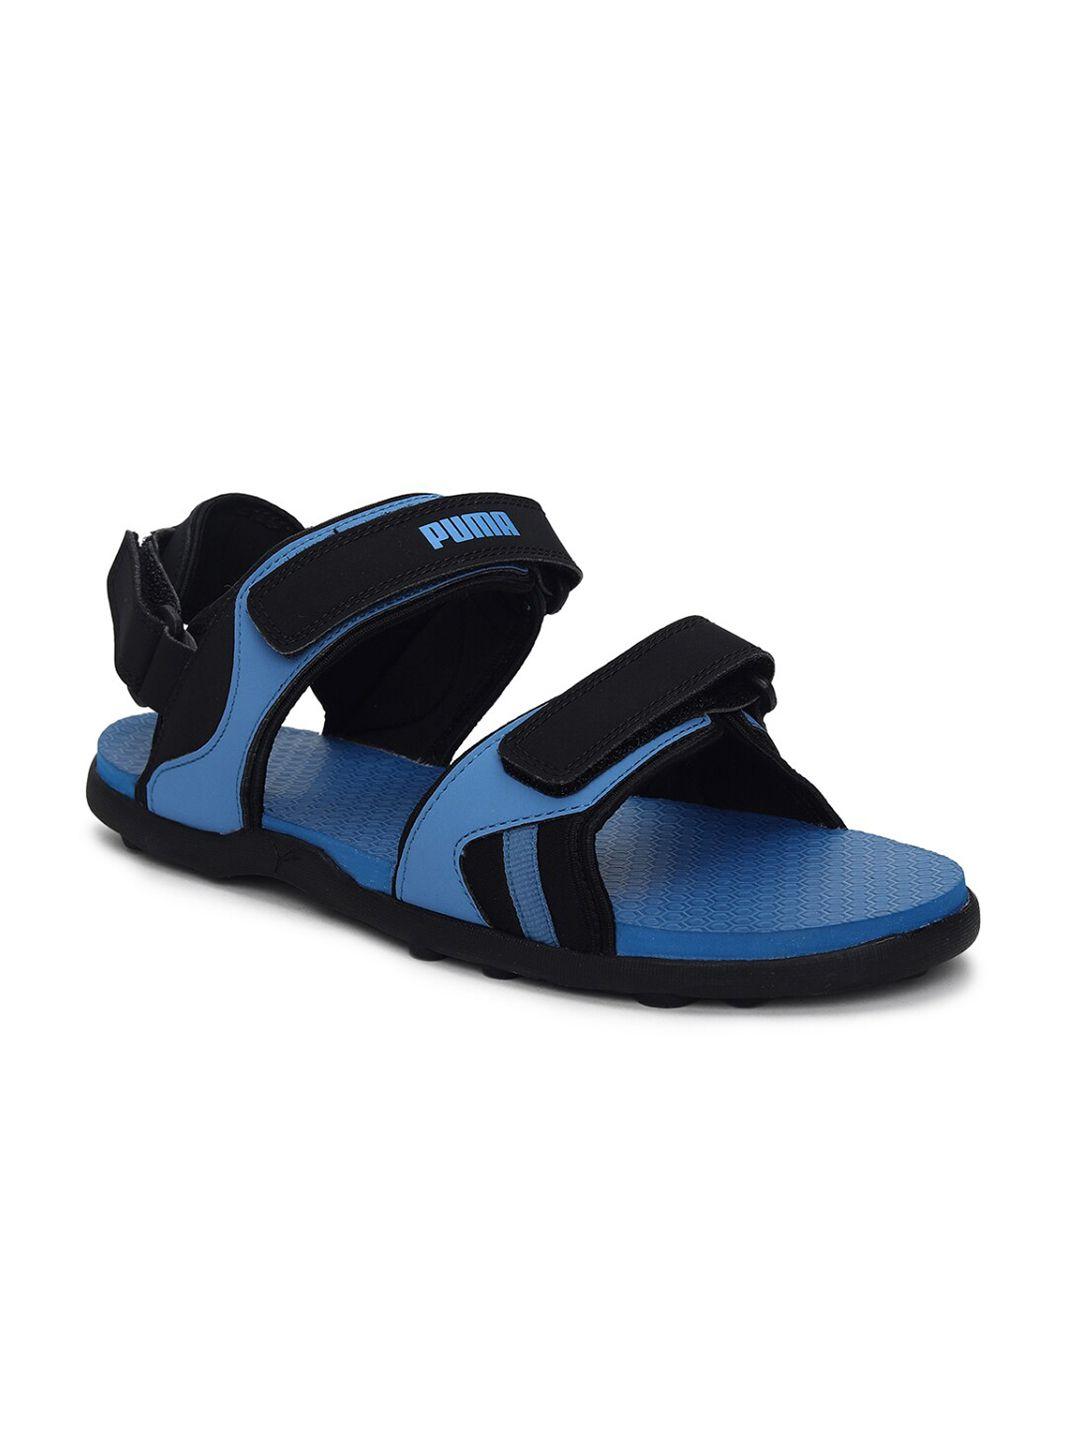 puma-men-blue-&-black-comfort-sandals